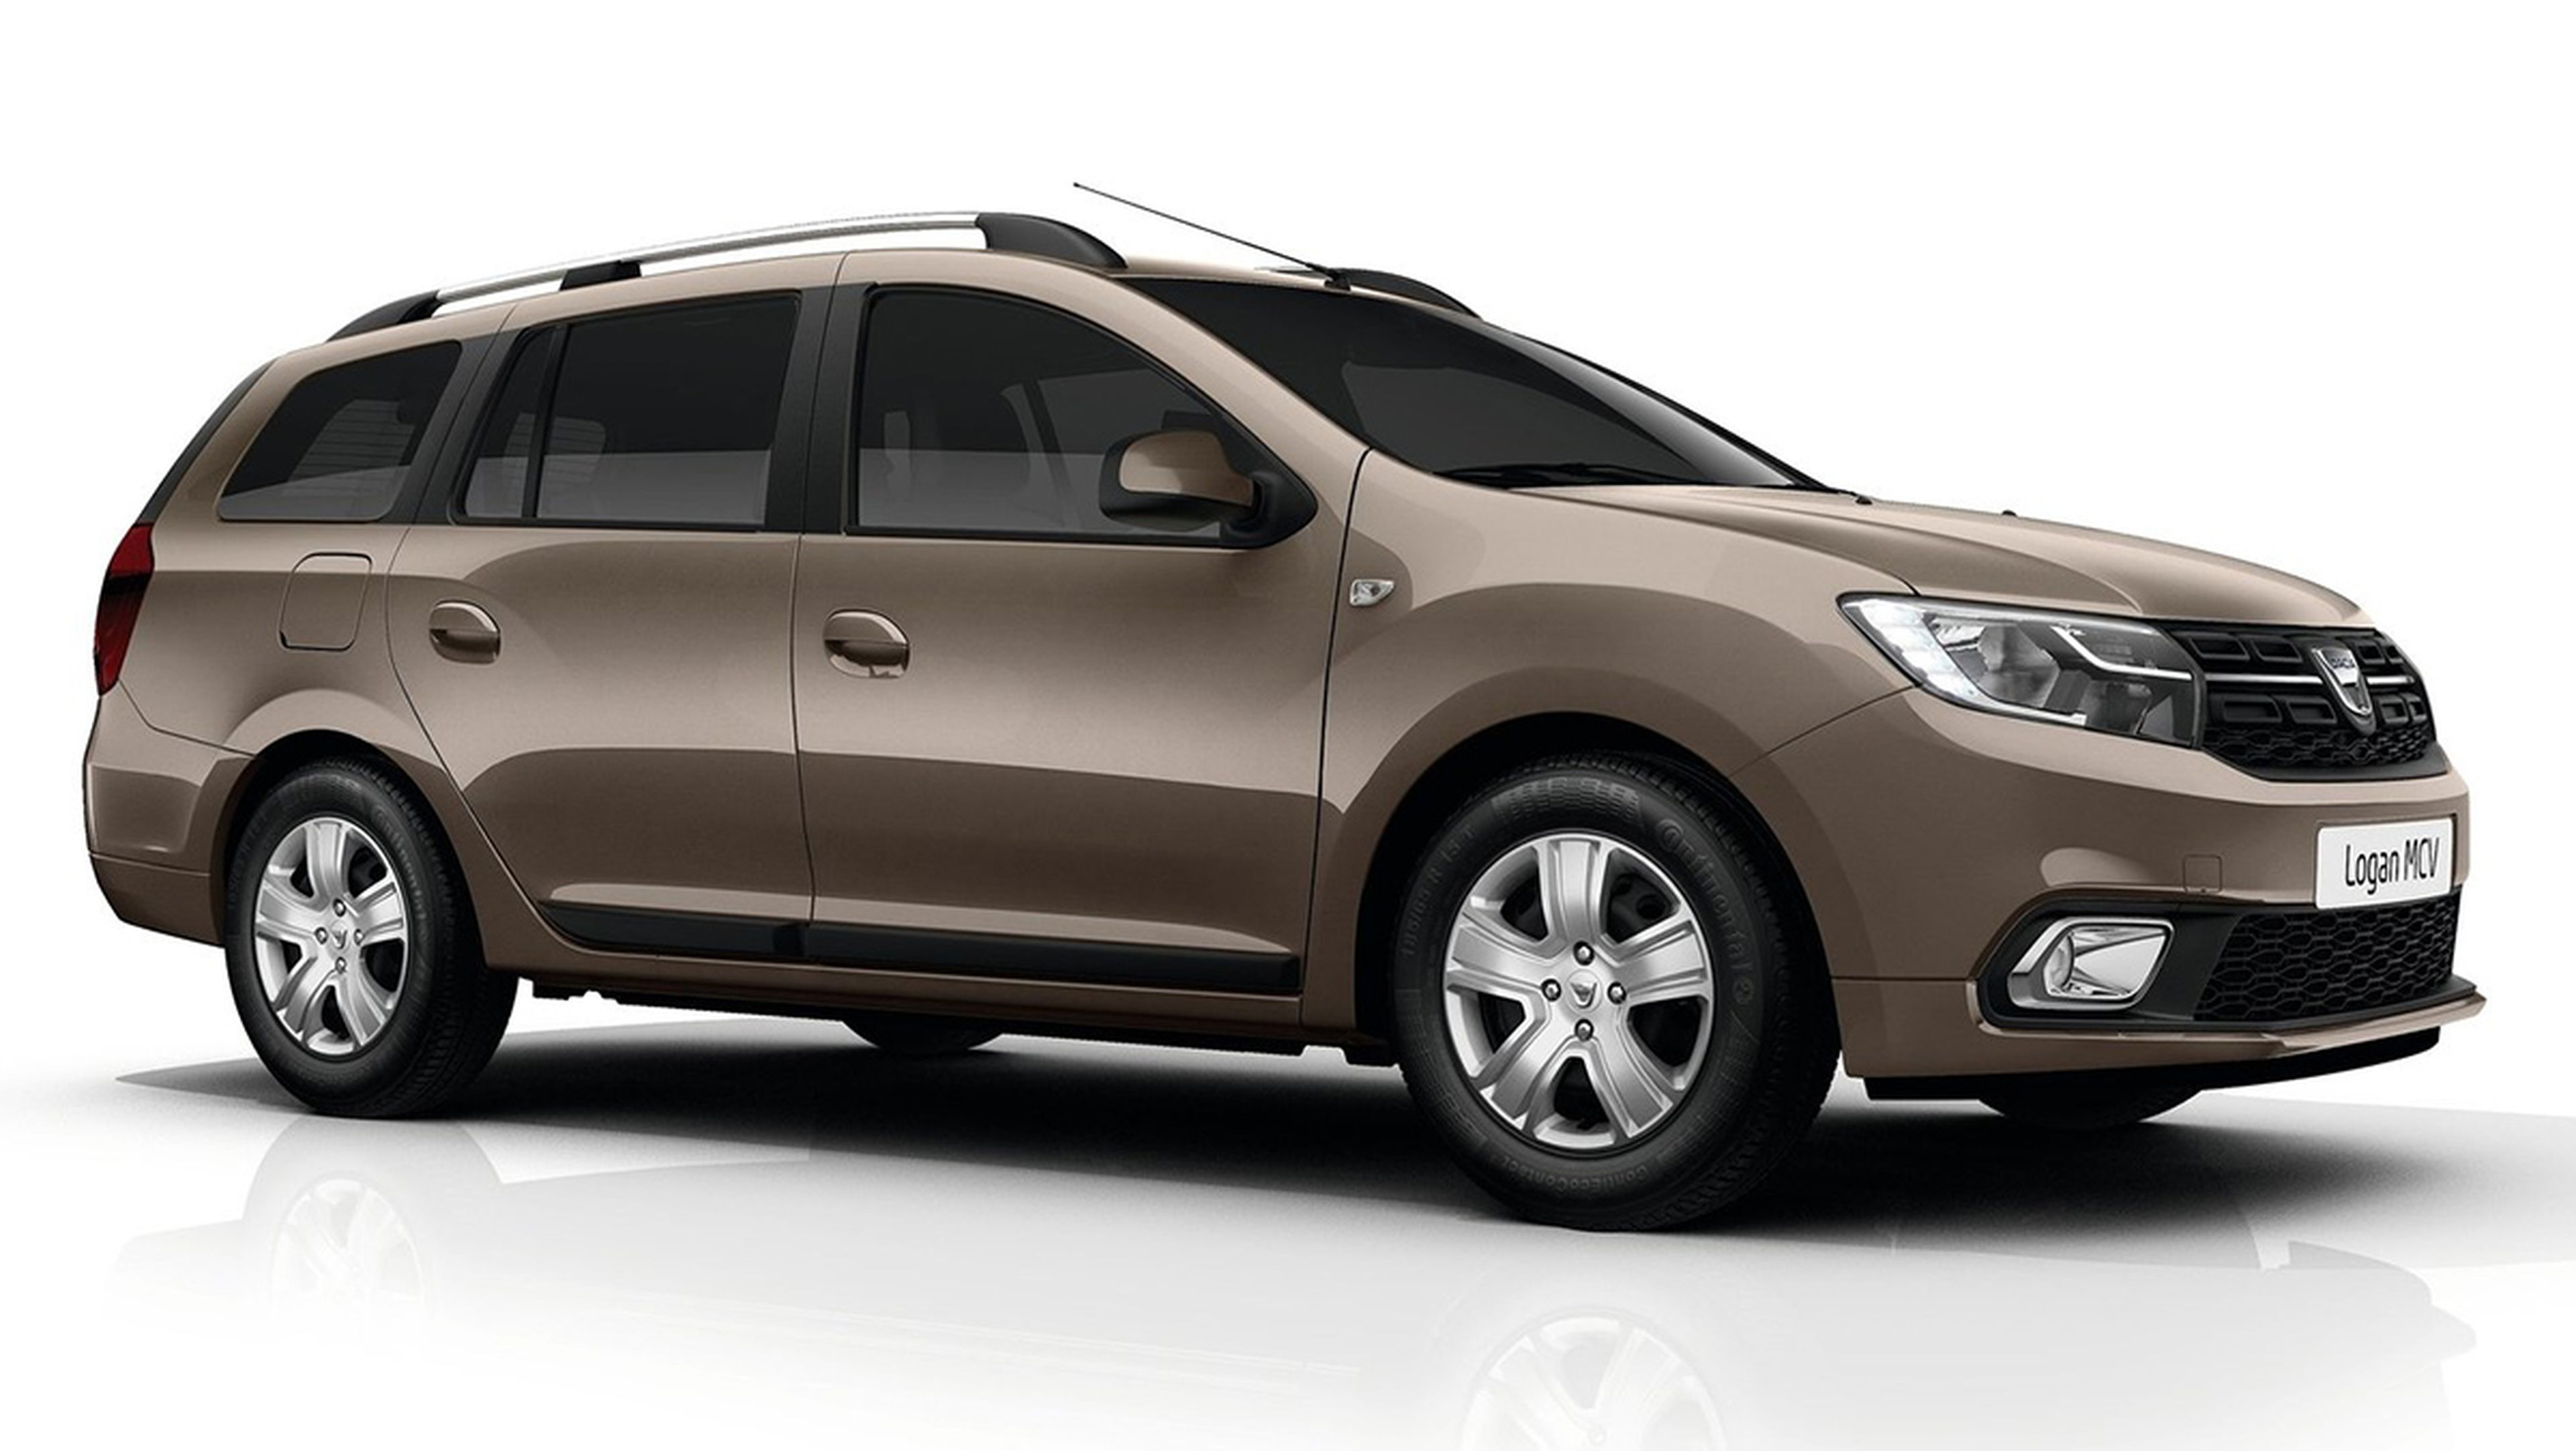 Coches nuevos entre 8.000 y 10.000 euros - Dacia Logan MCV